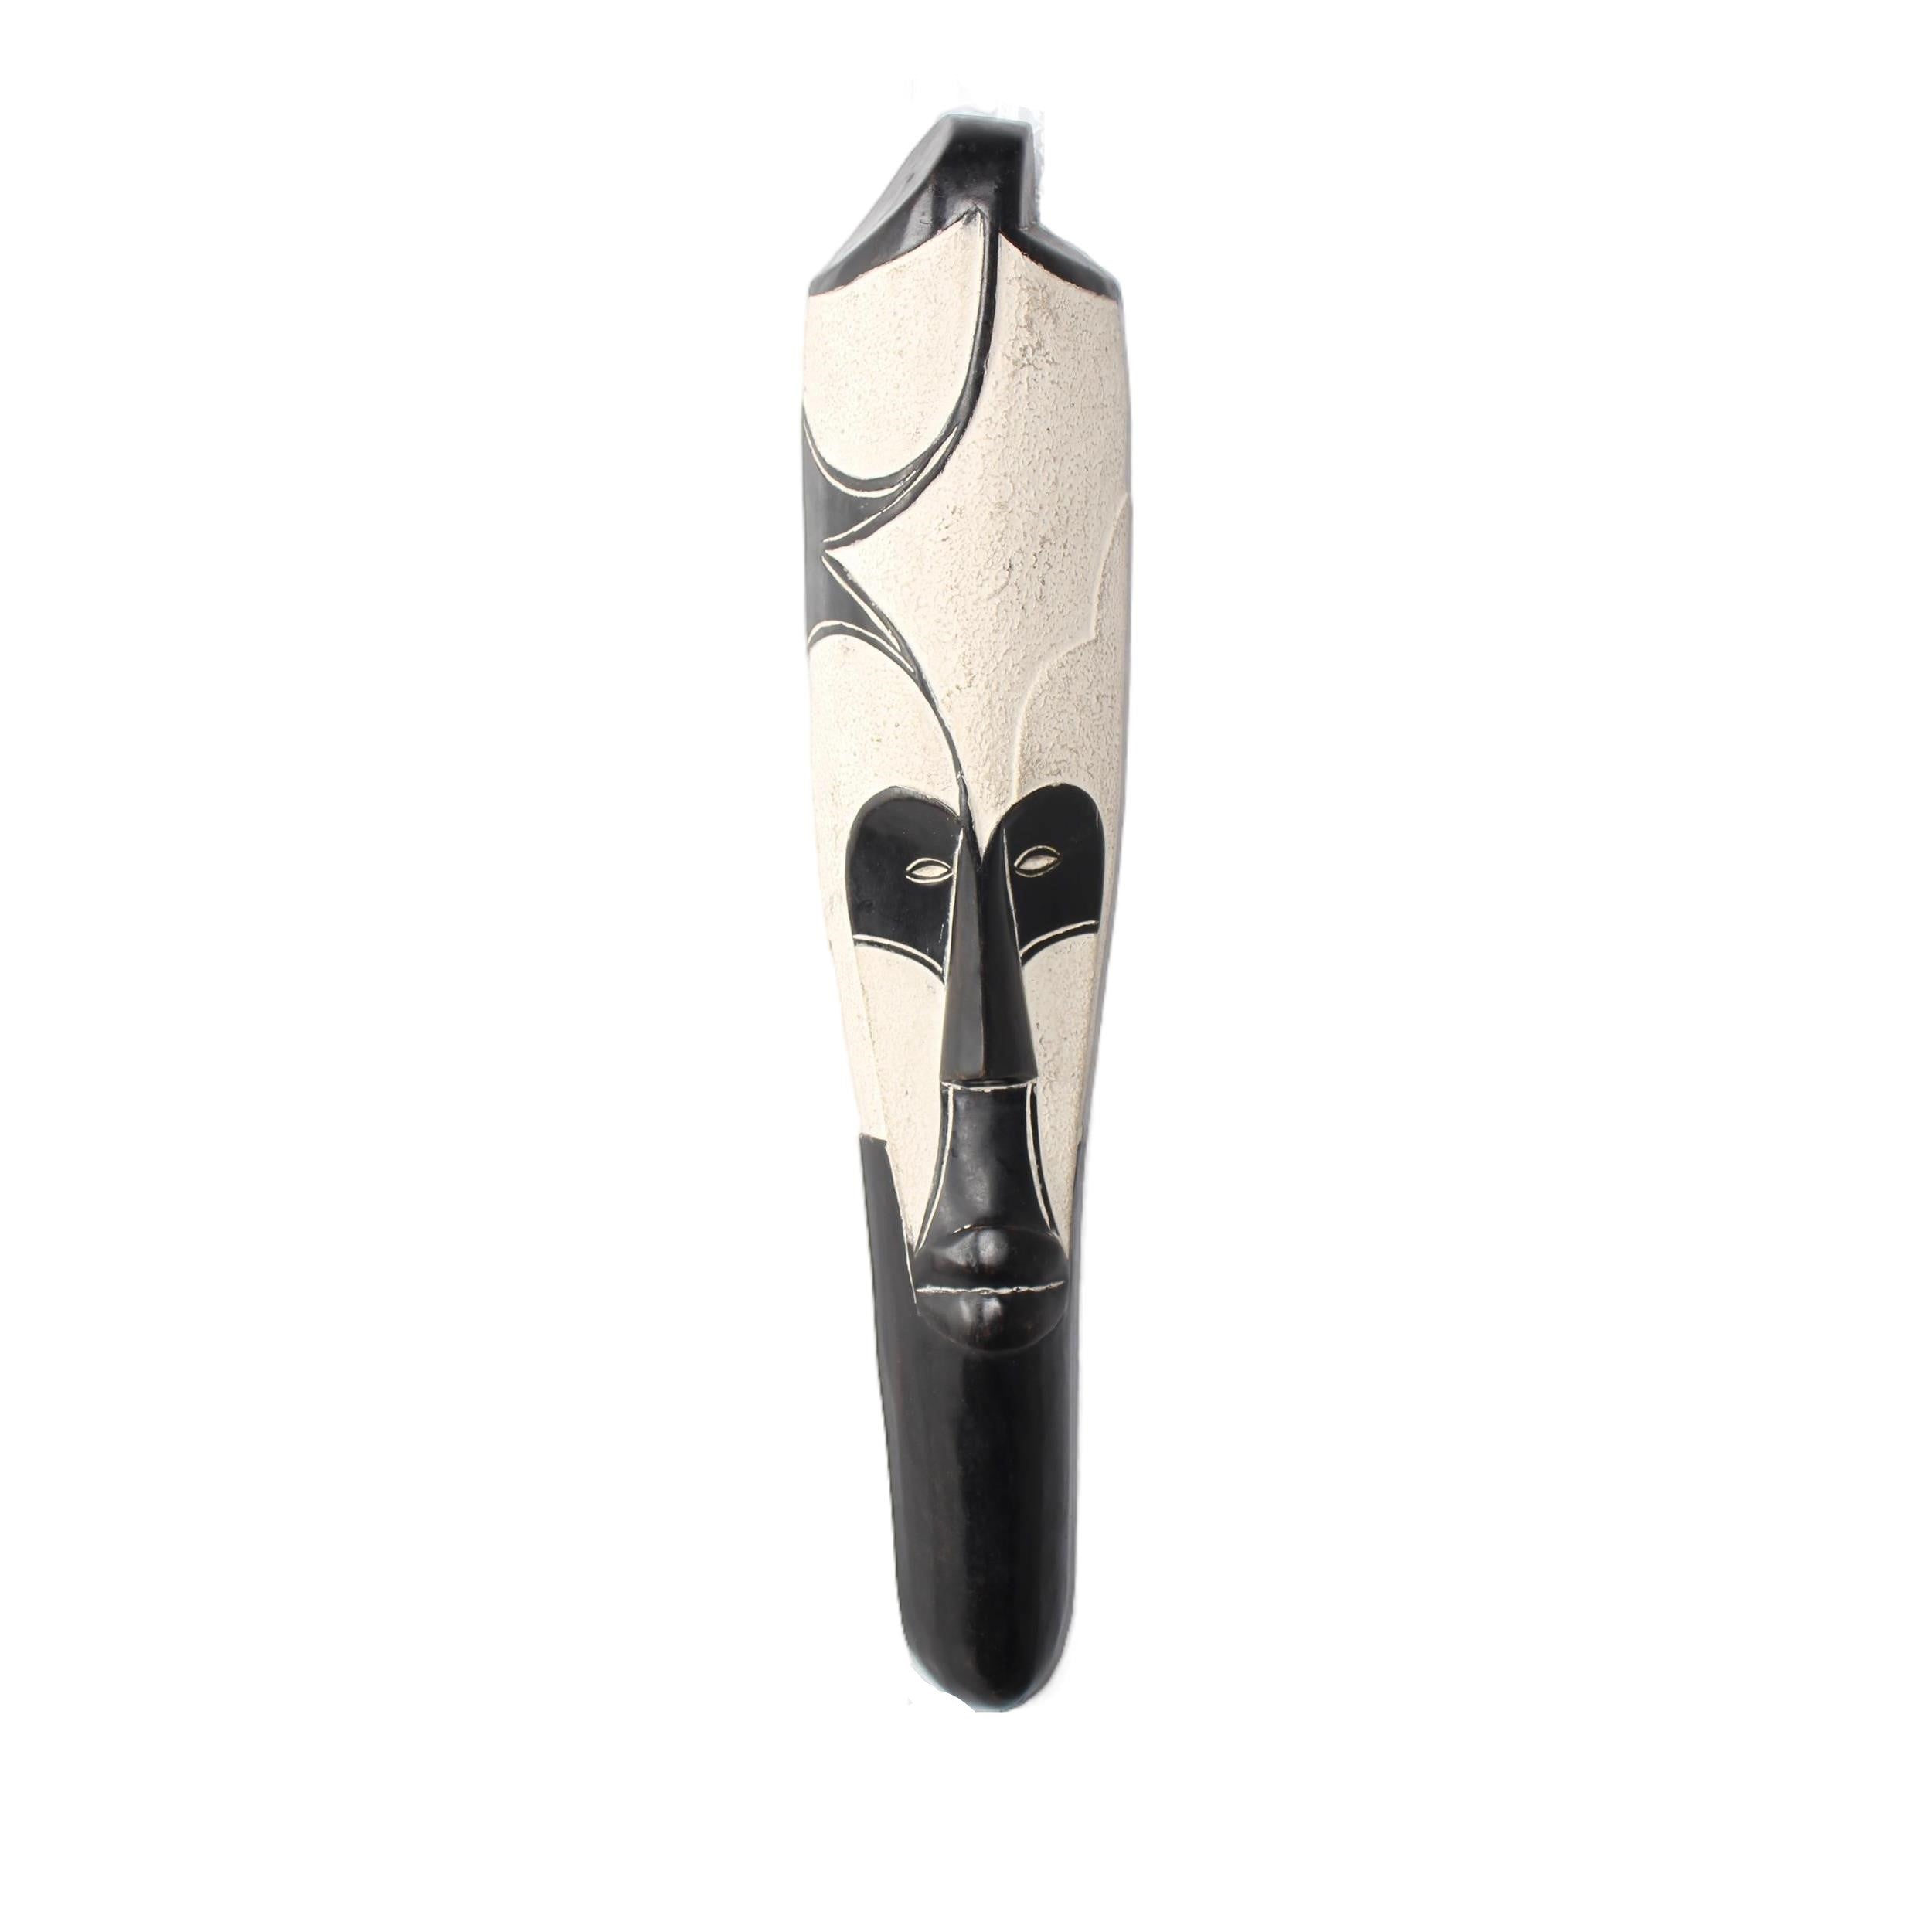 Fang Tribe Mask ~23.6" Tall - Mask